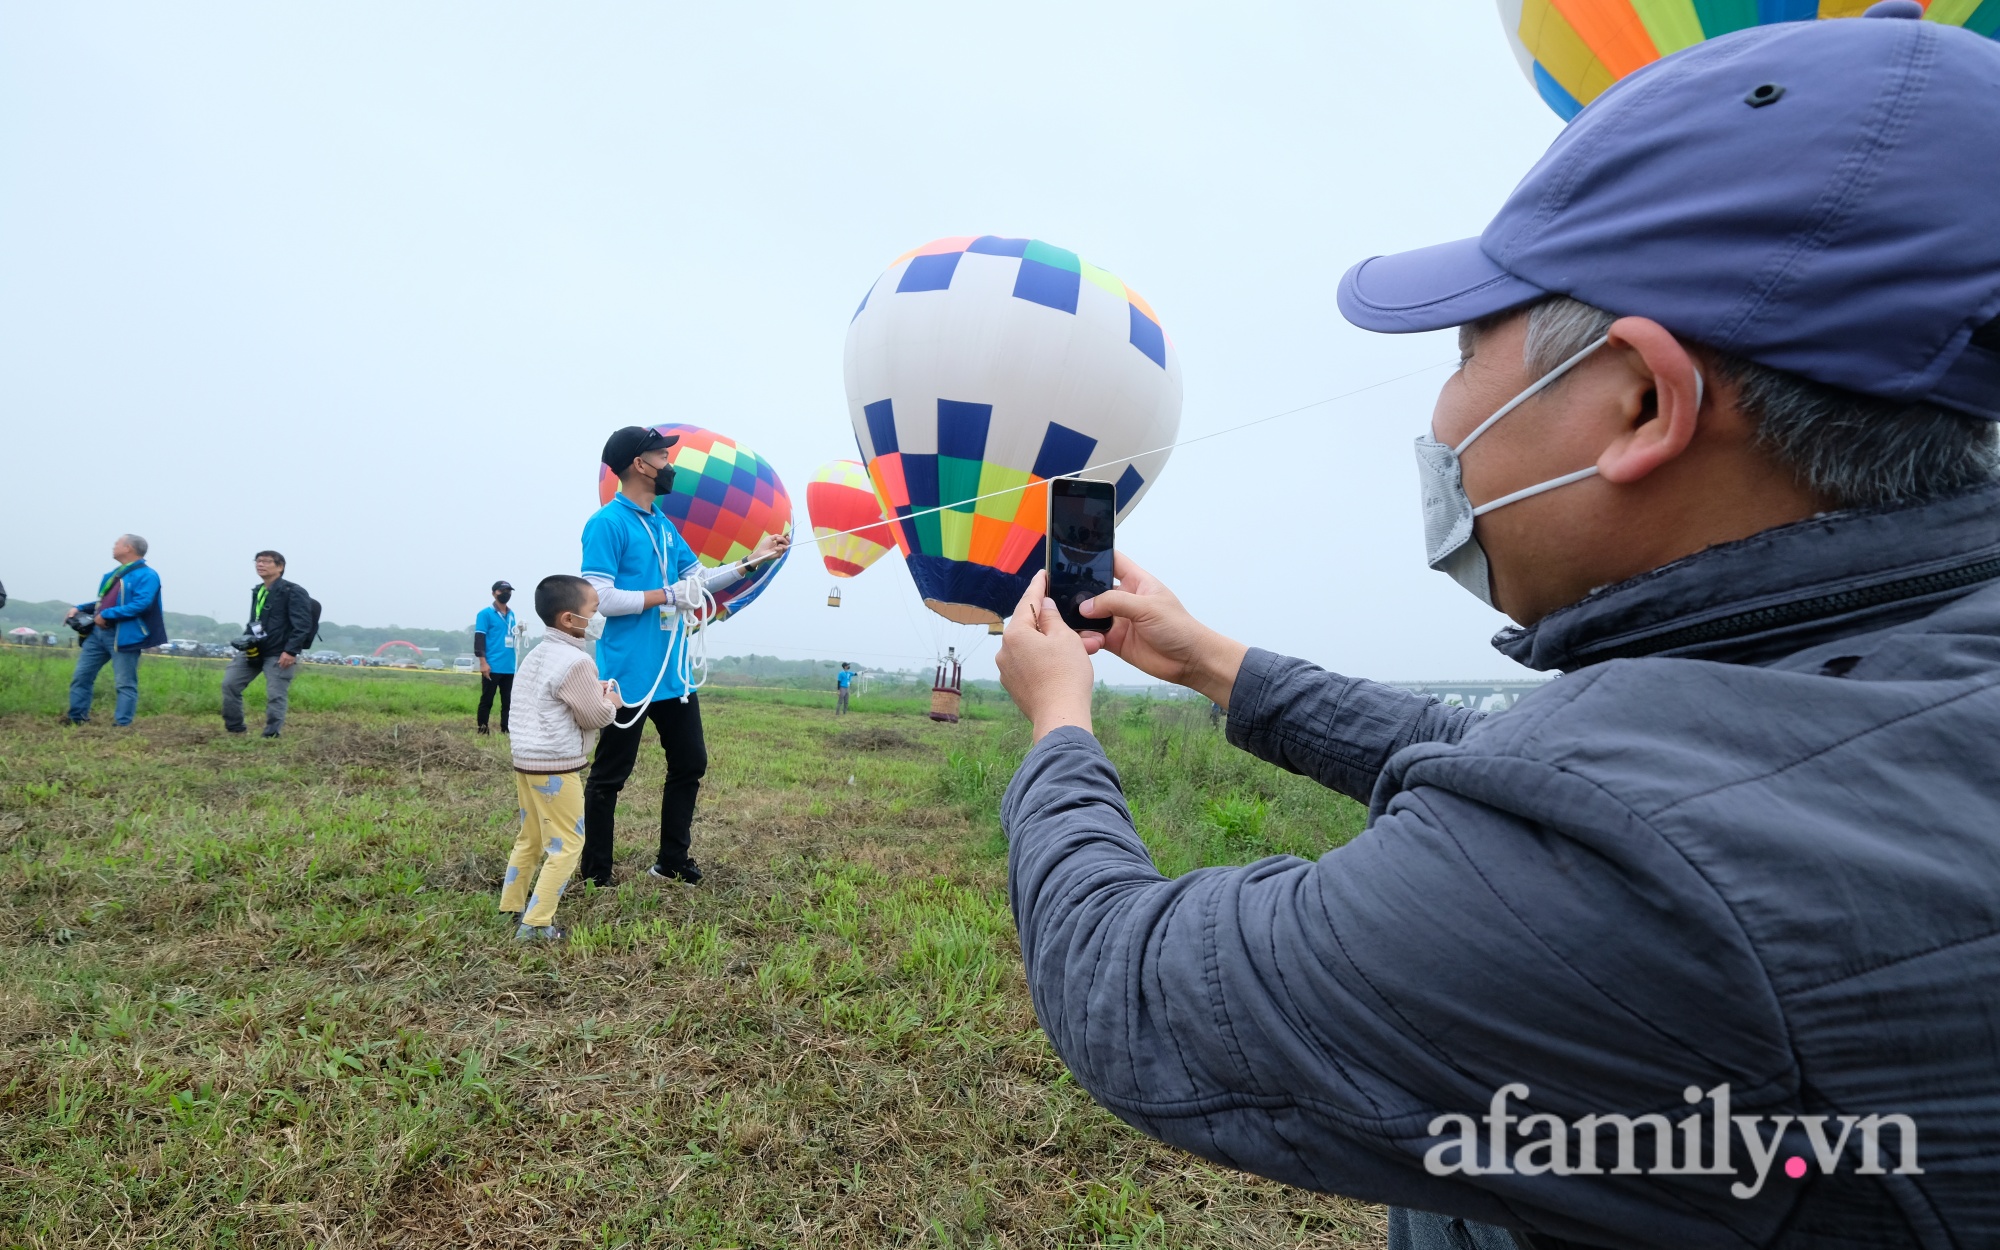 Lần đầu tiên tổ chức Ngày hội khinh khí cầu tại Hà Nội: Nhanh chân đến để trải nghiệm khoảnh khắc hiếm có ngắm thành phố từ trên cao - Ảnh 9.